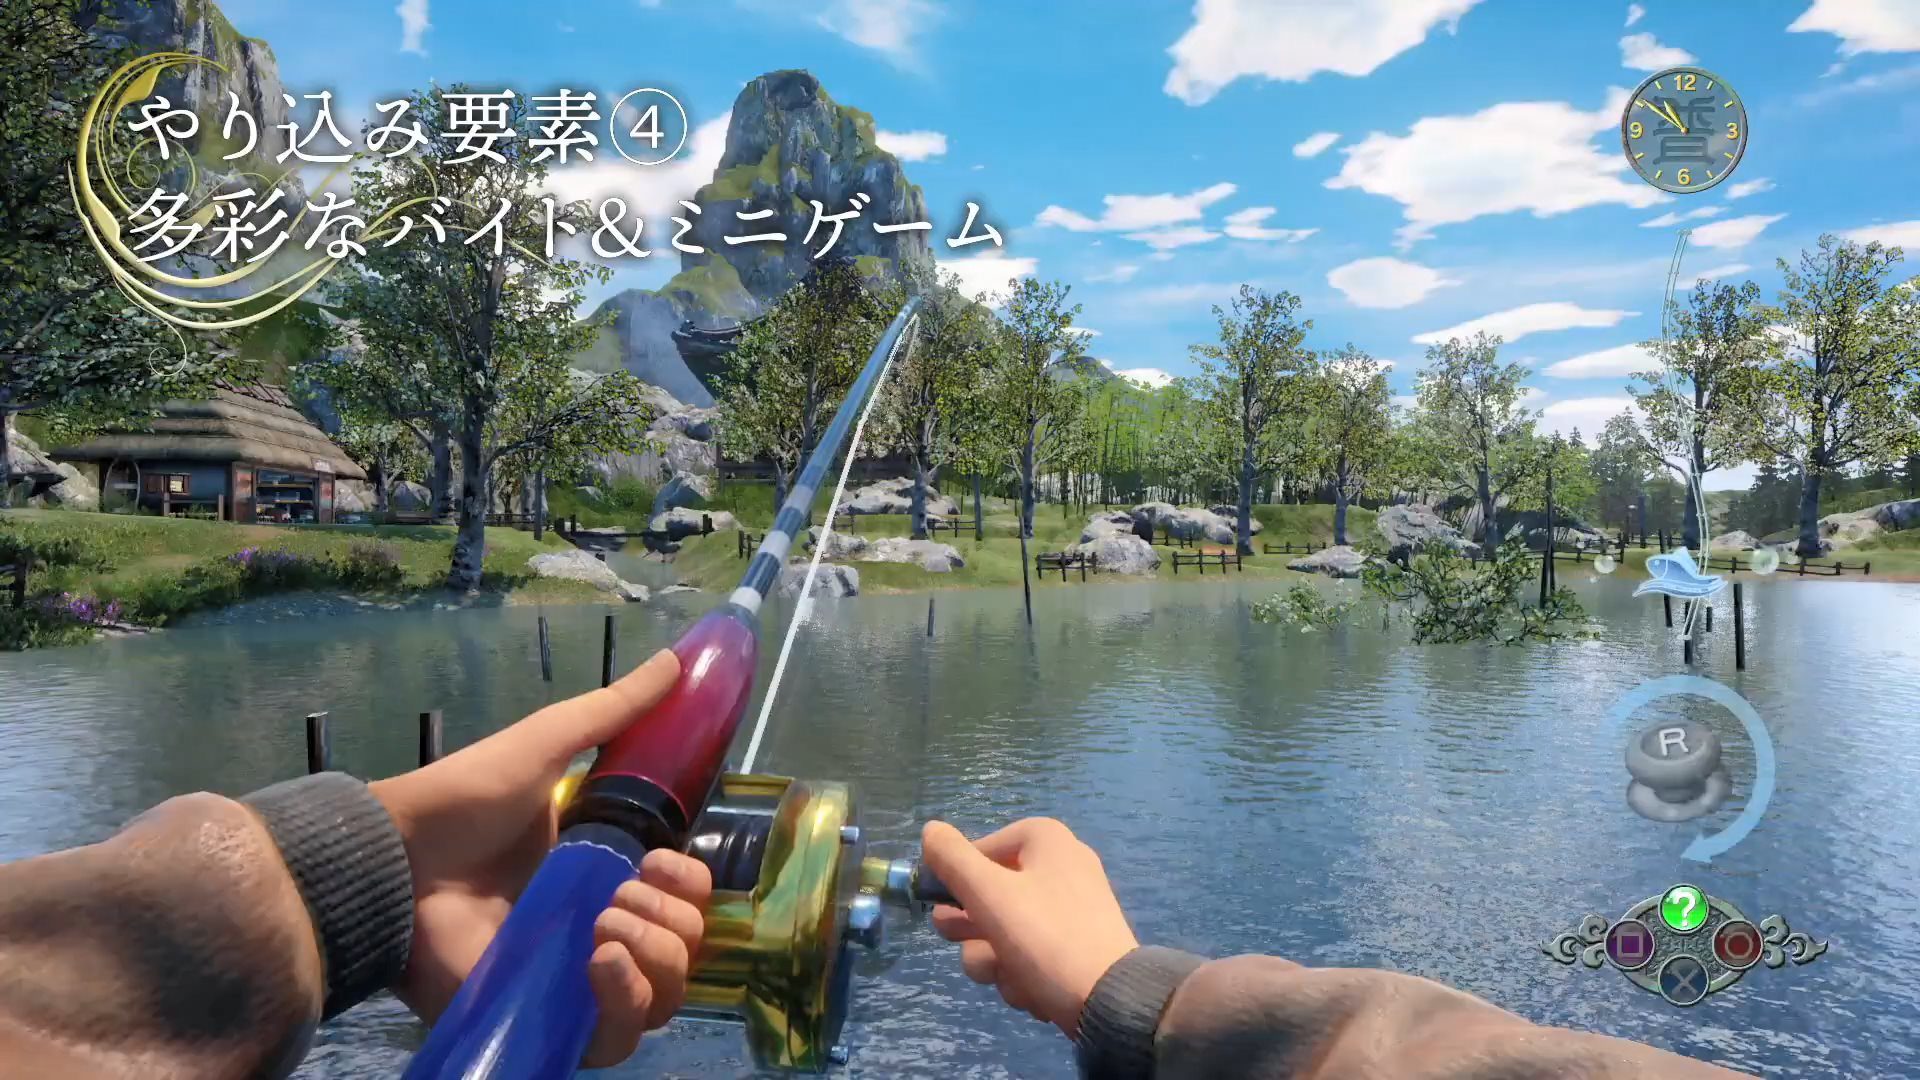 《莎木3》游玩要素篇介绍影像 钓鱼打机一个都不能少